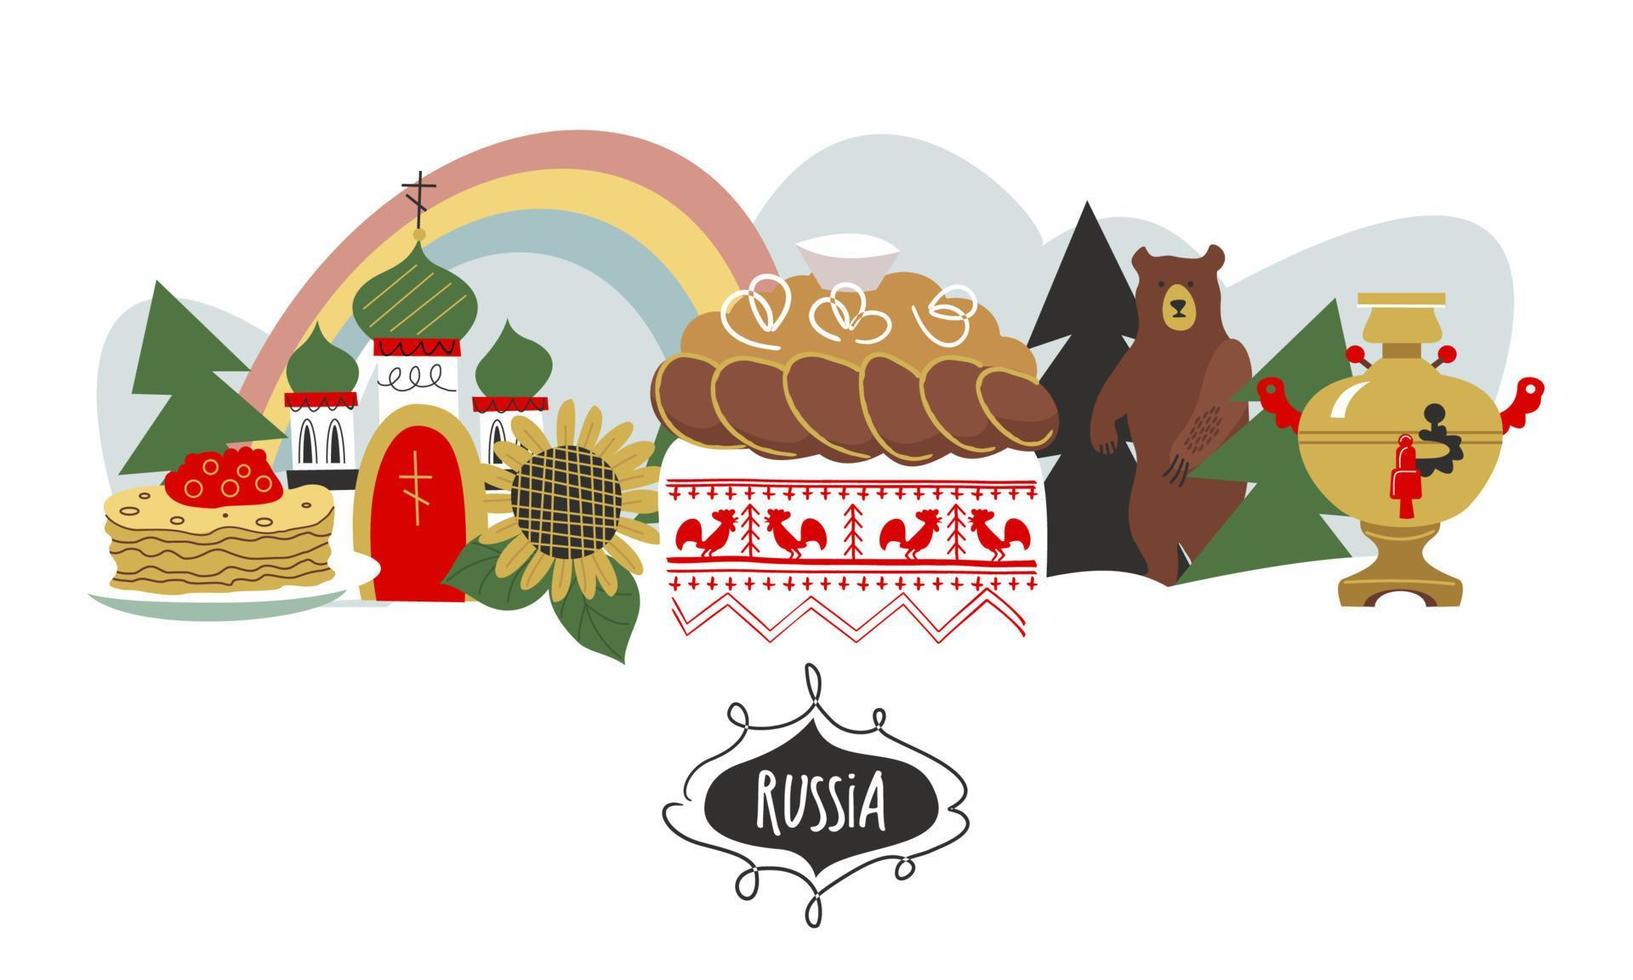 Russia. monumenti della russia e simboli del paese. illustrazione vettoriale. un insieme di elementi per creare il tuo design. vettore